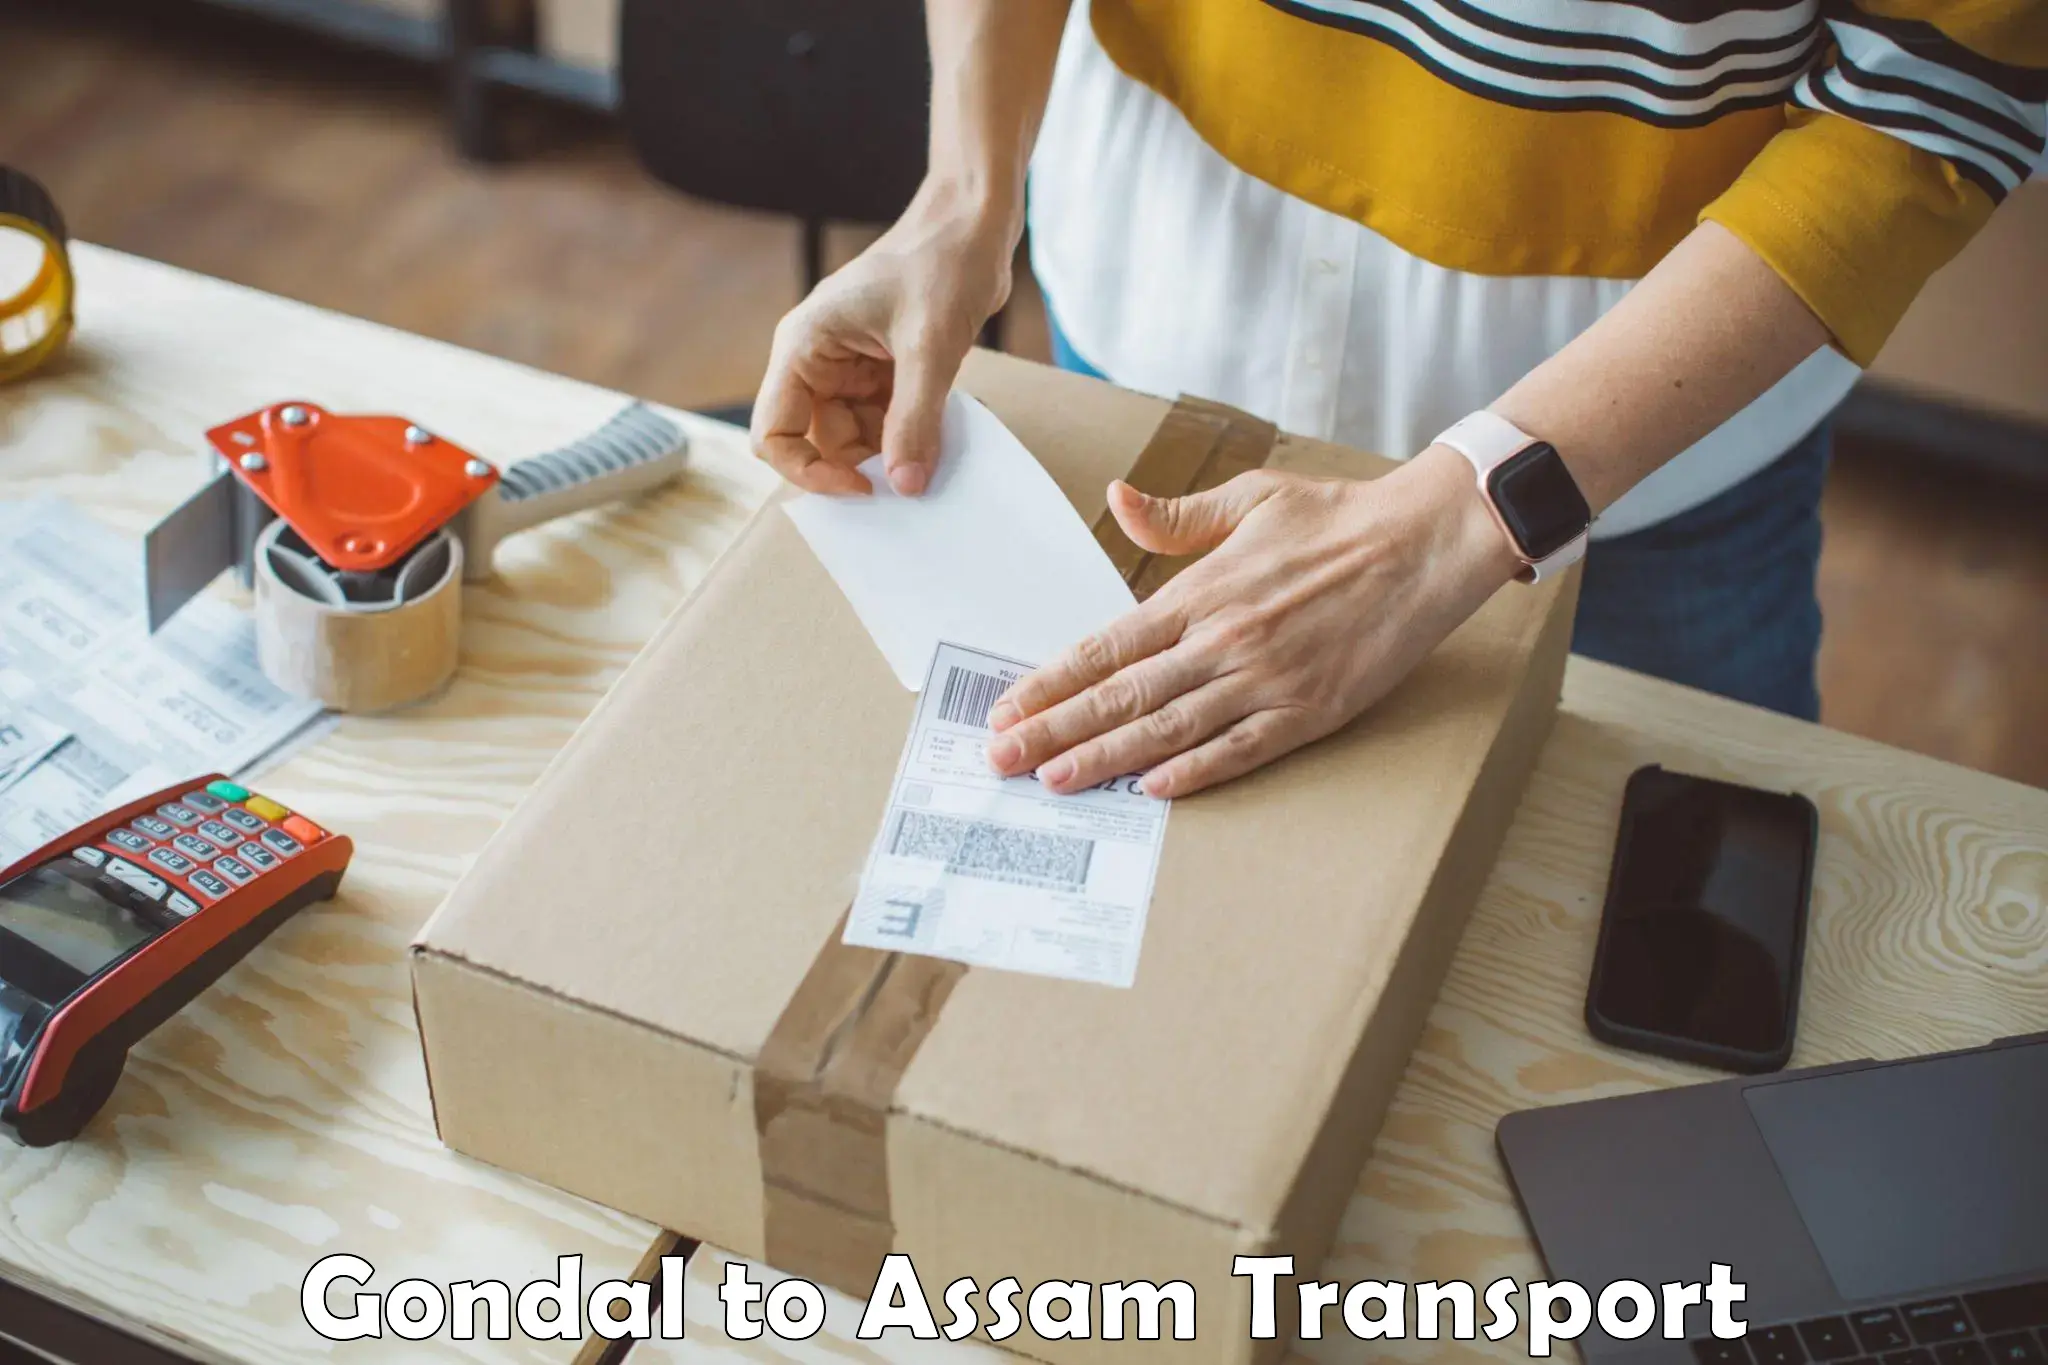 Online transport service Gondal to Assam